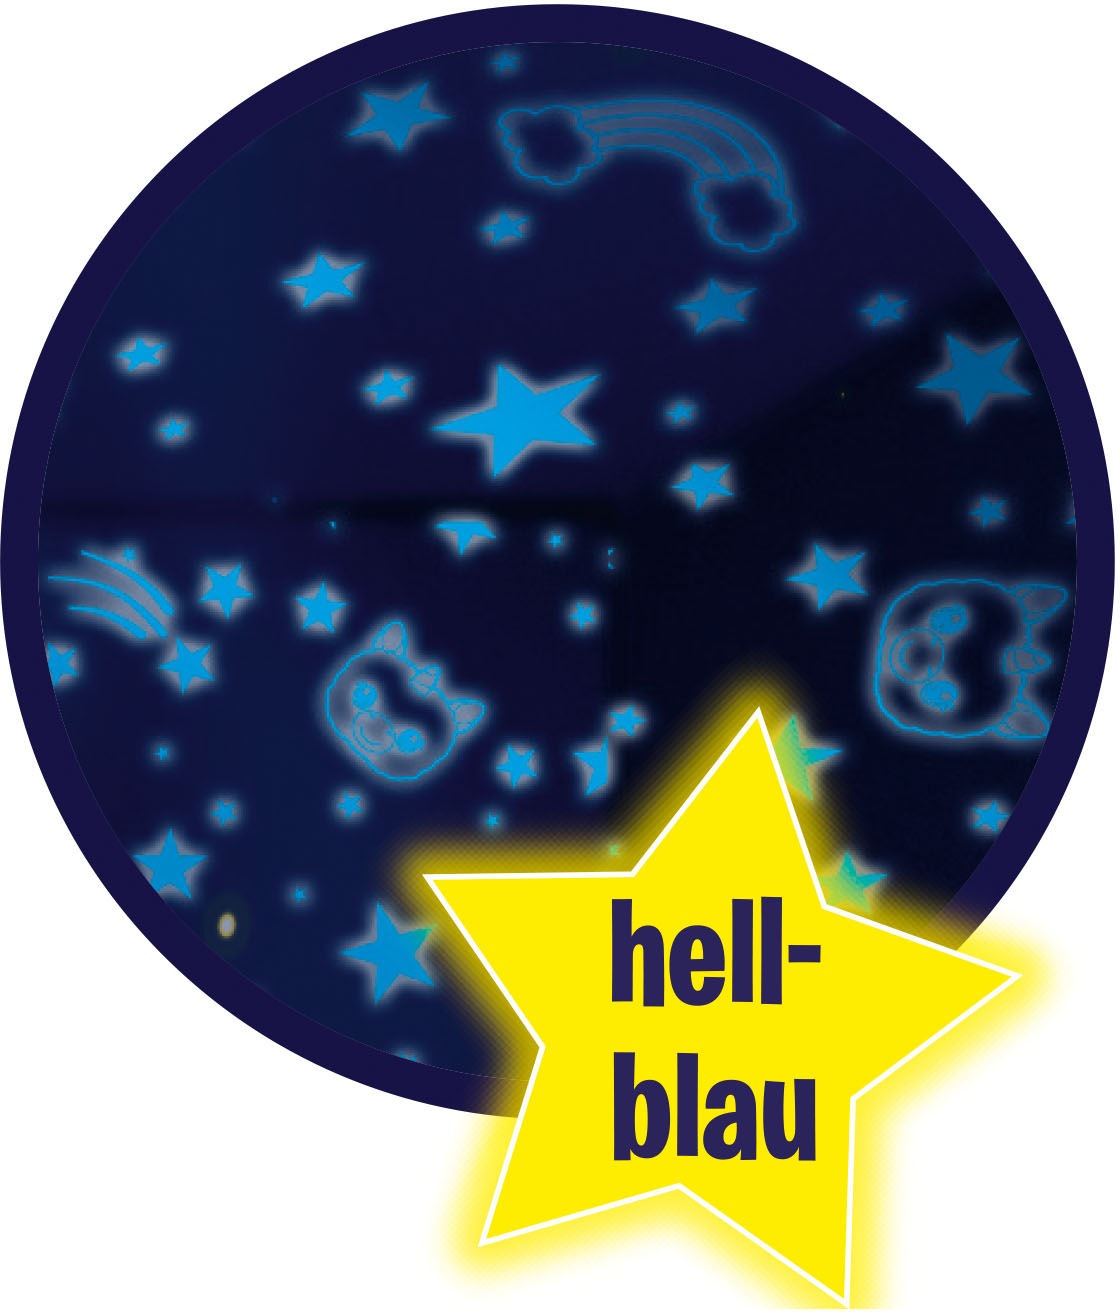 MediaShop Plüschfigur »Star Belly Dream Light - Knuddeliger Welpe«, mit Nachtlichtfunktion